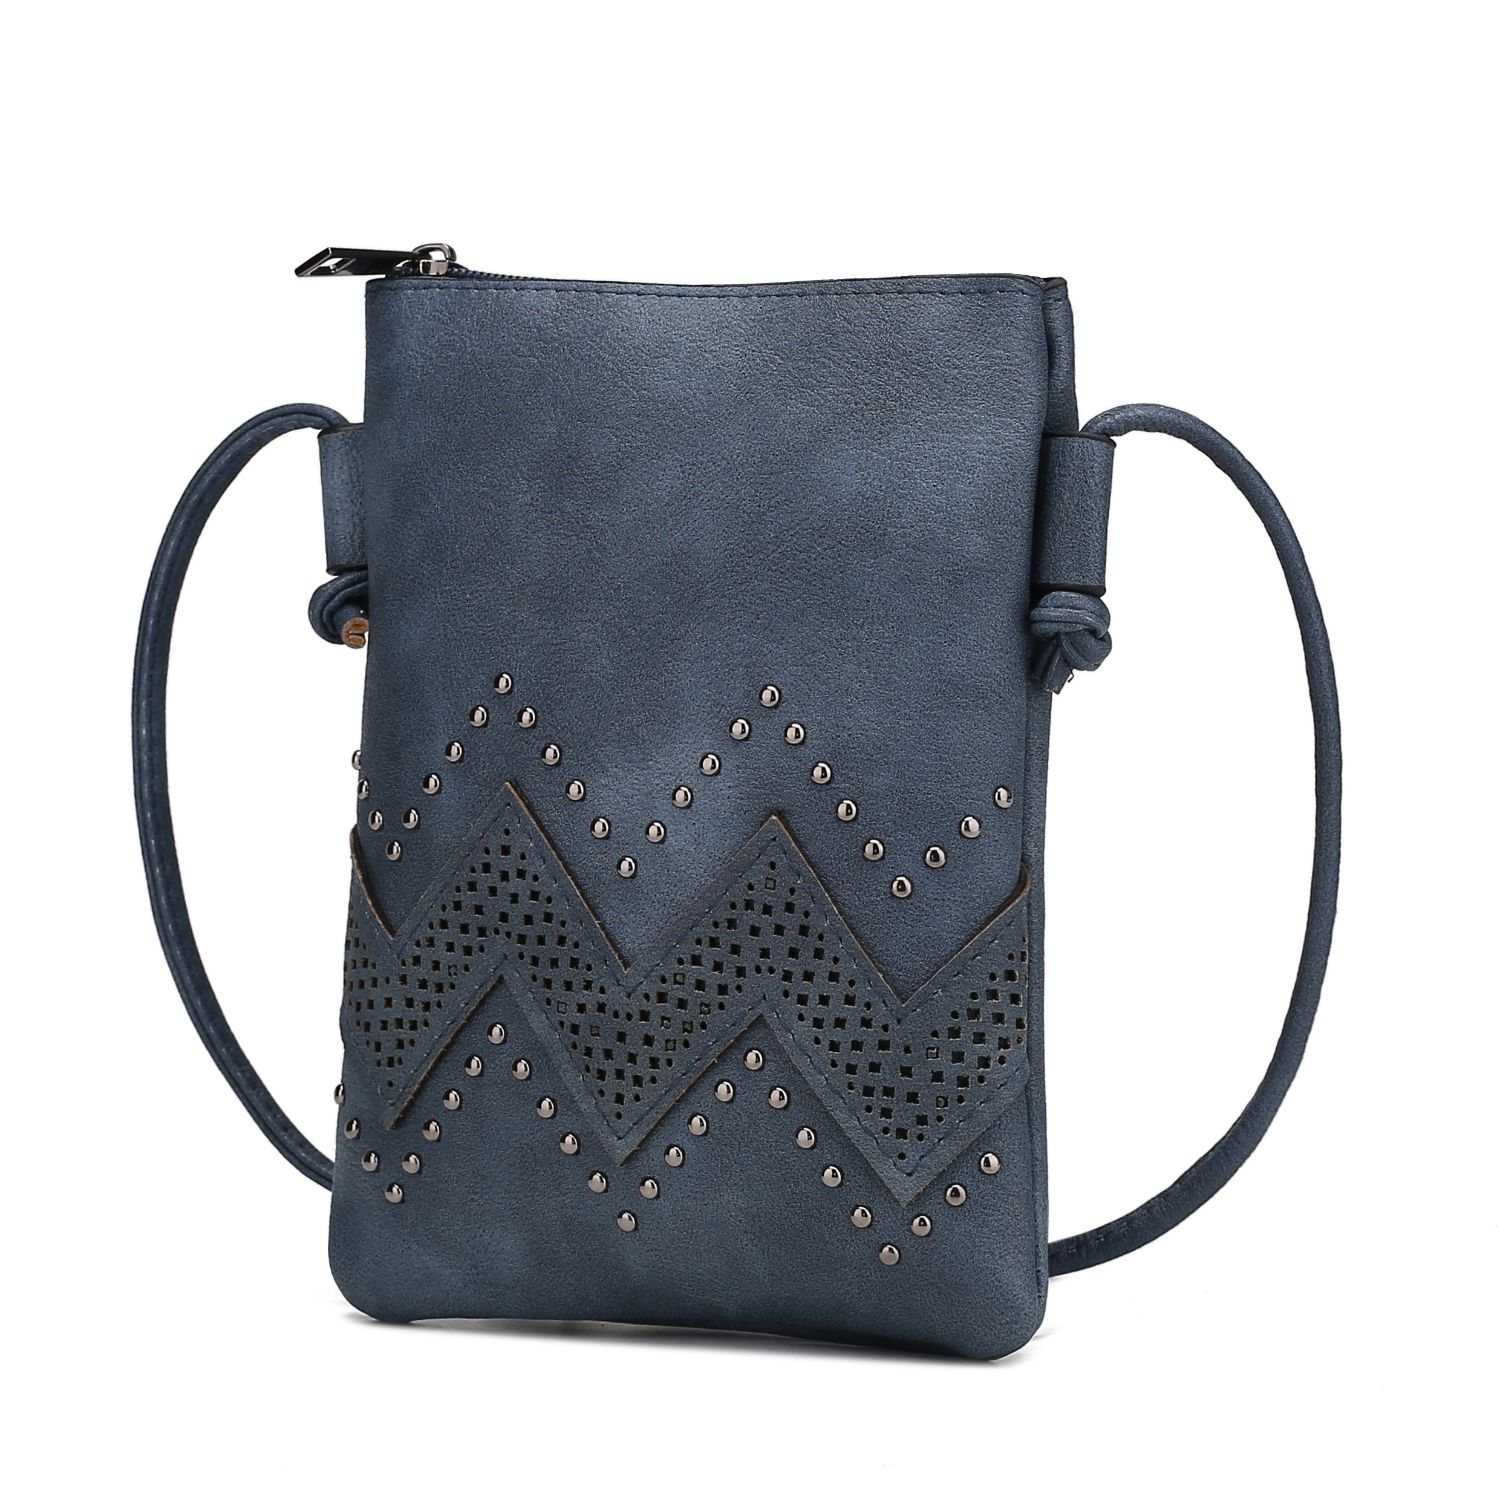 MKF Collection Athena Crossbody Handbag By Mia K - Navy